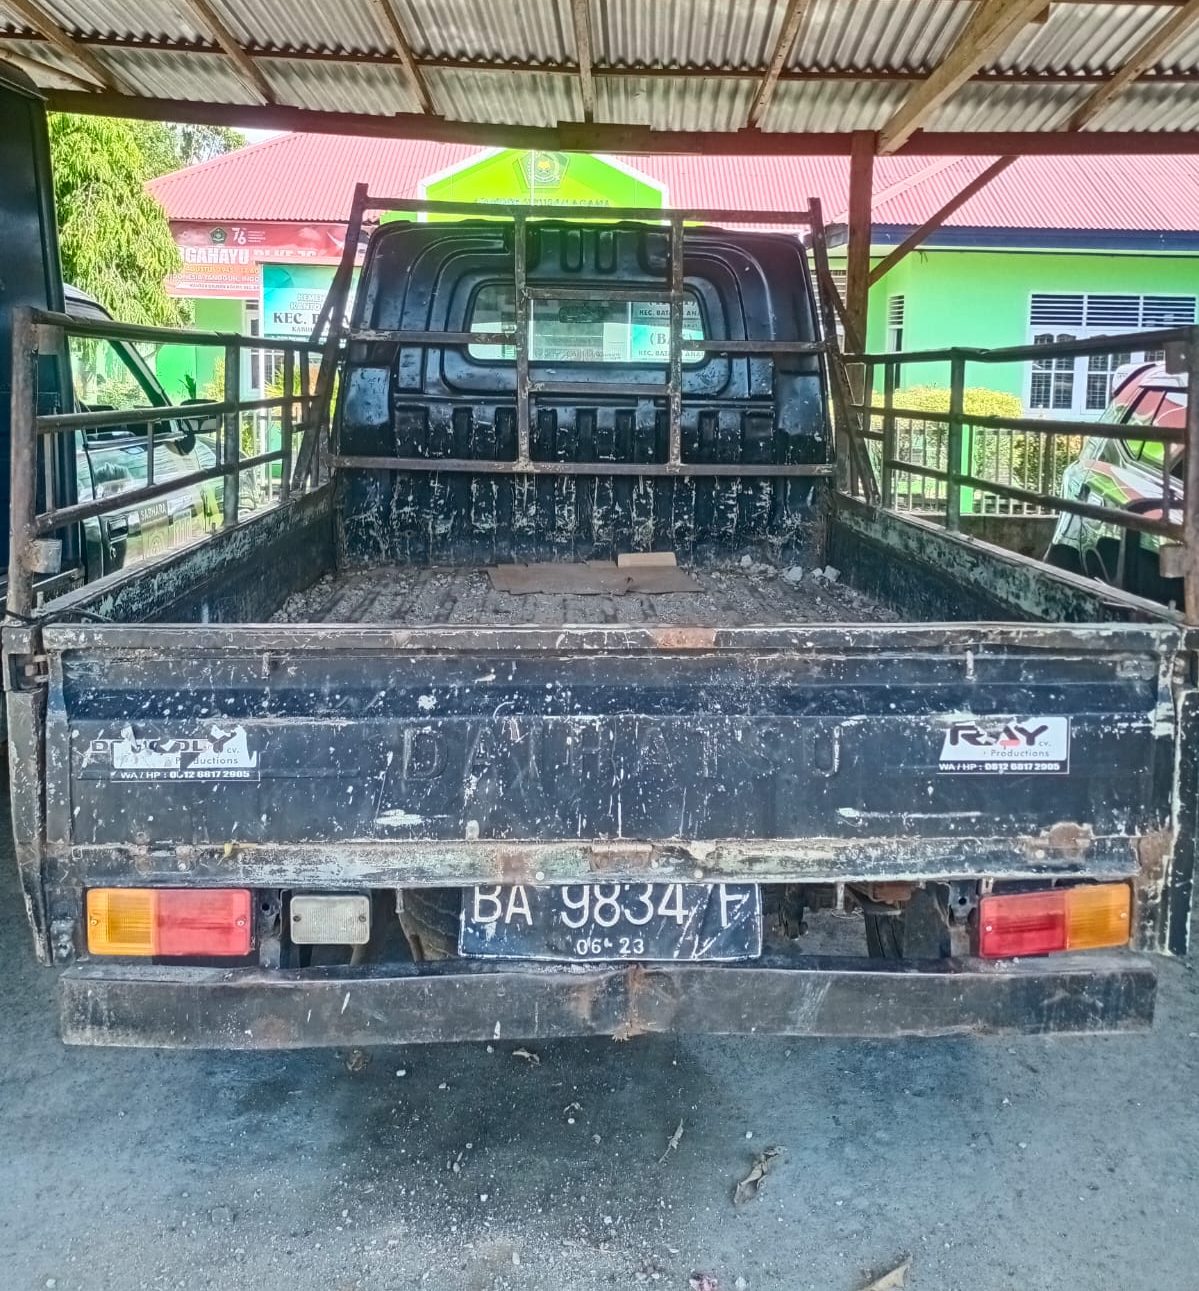 Mobil yang digunakan pelaku pencurian besi pembangunan jalan tol Padang-Pekanbaru. (Foto: Dok. Polsek Batang Anai)